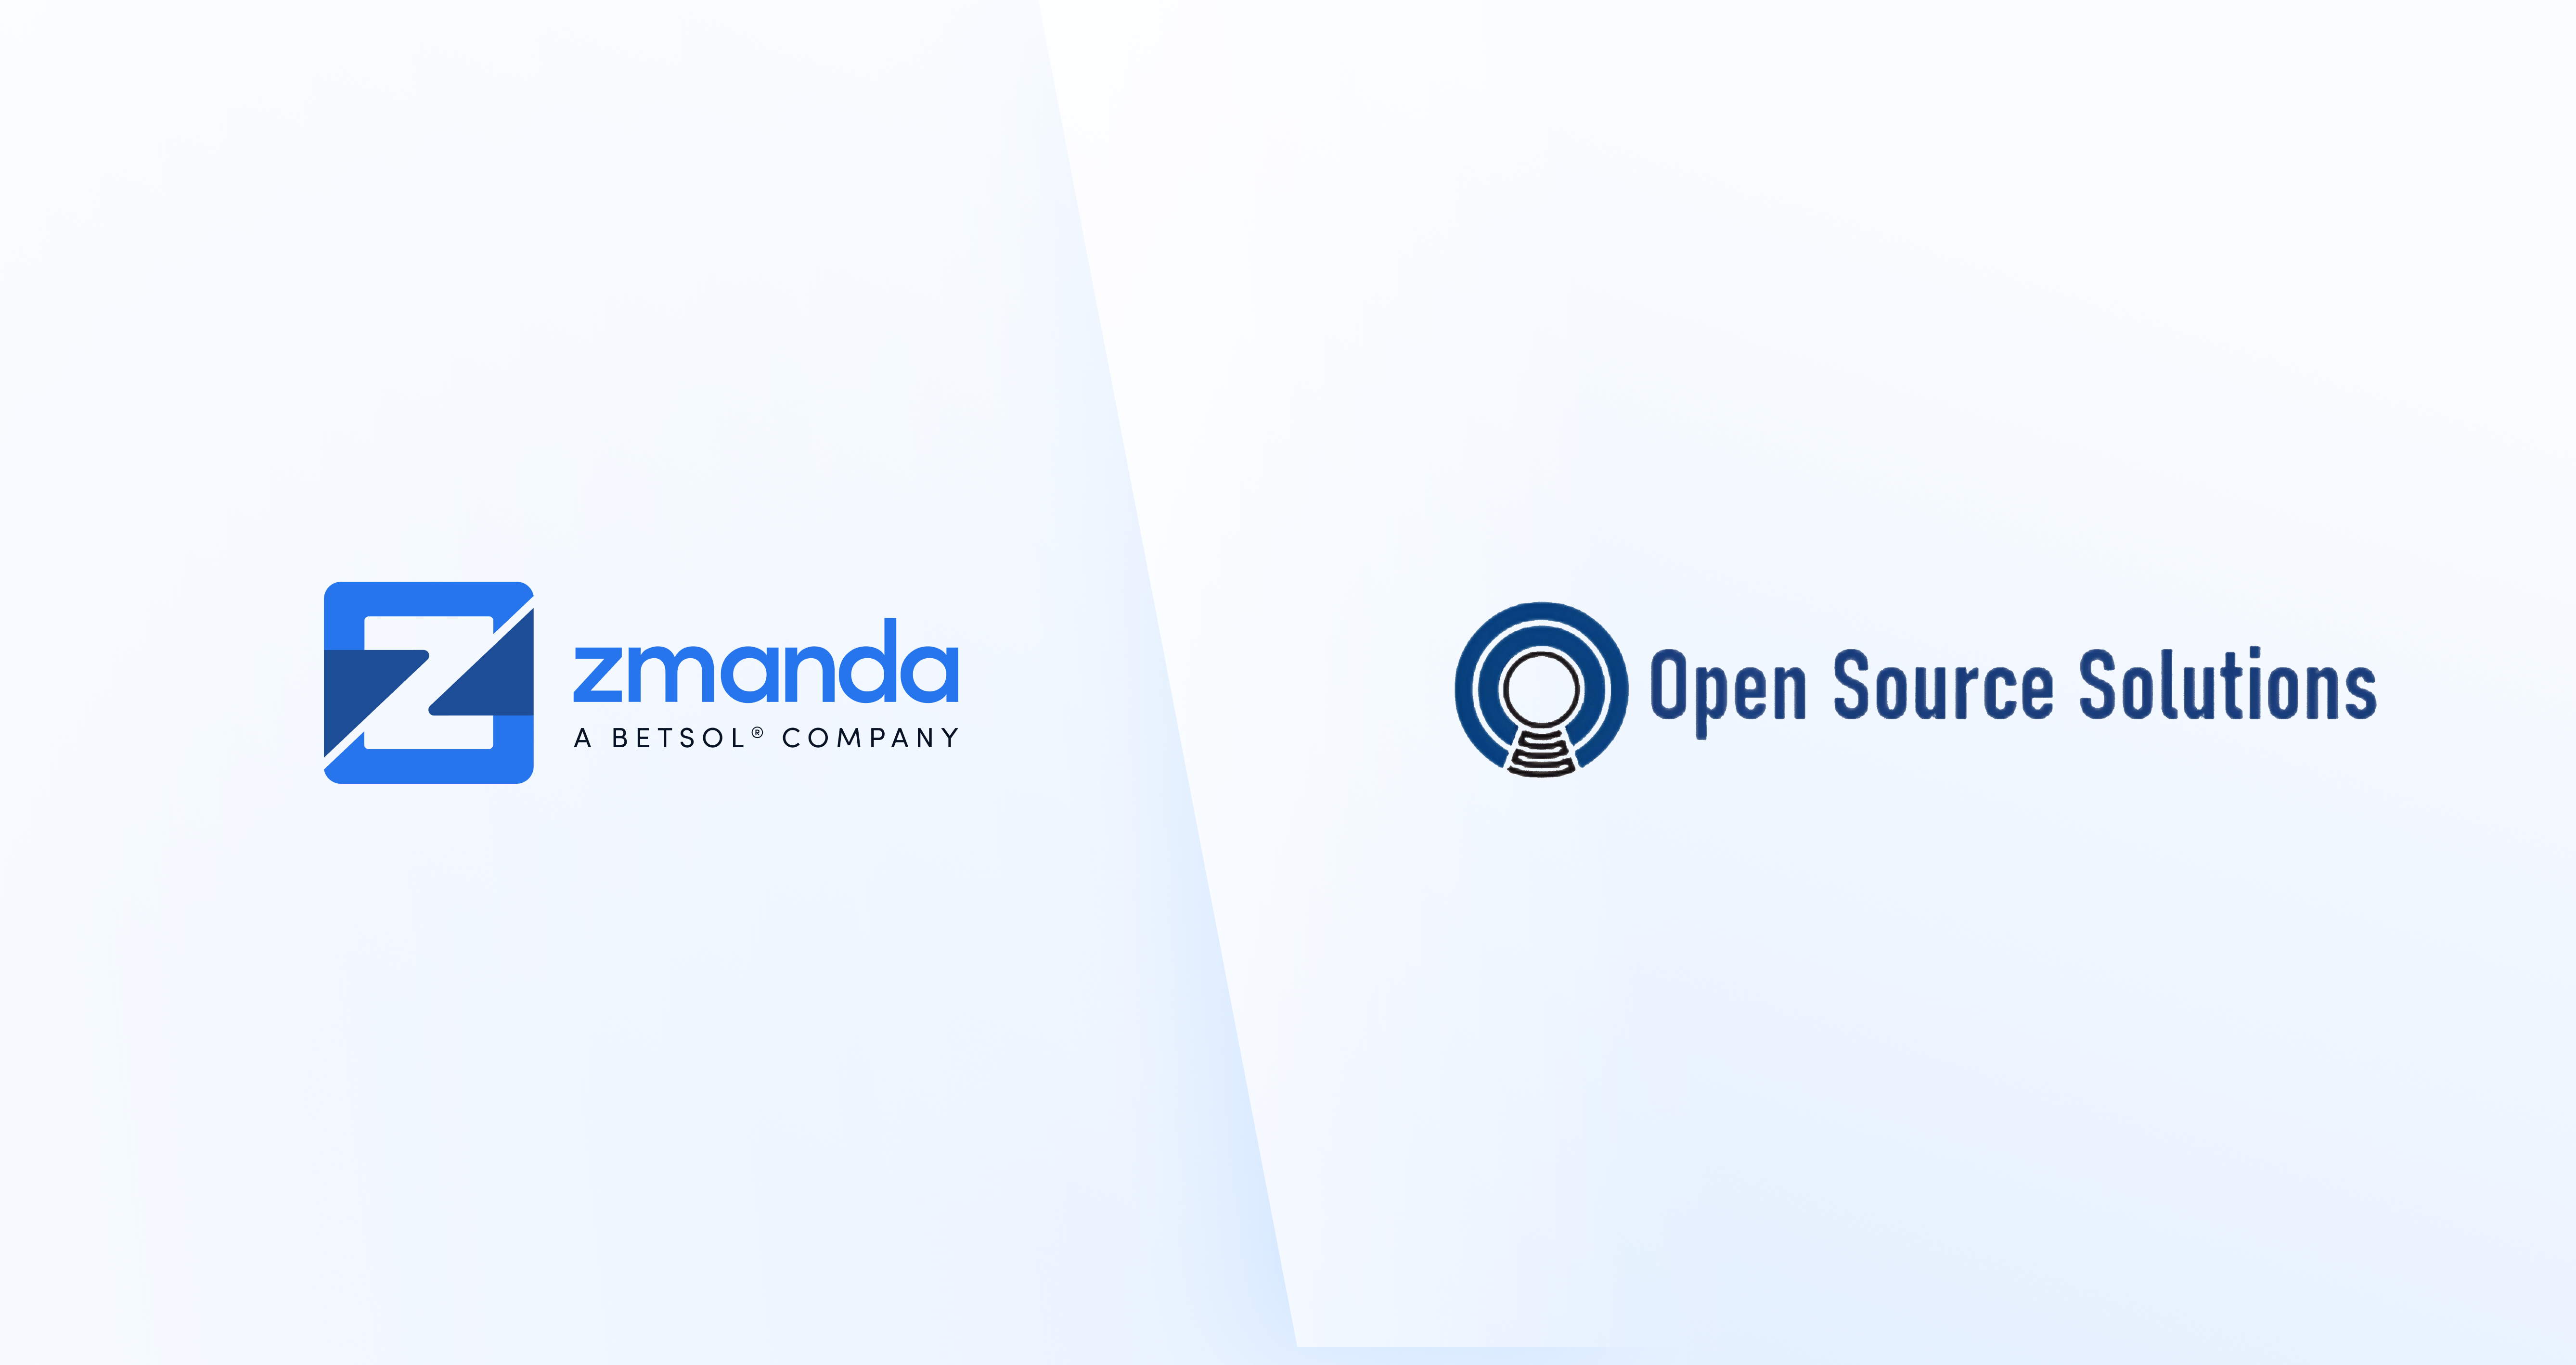 zmanda-open-source-solutions-partenariat